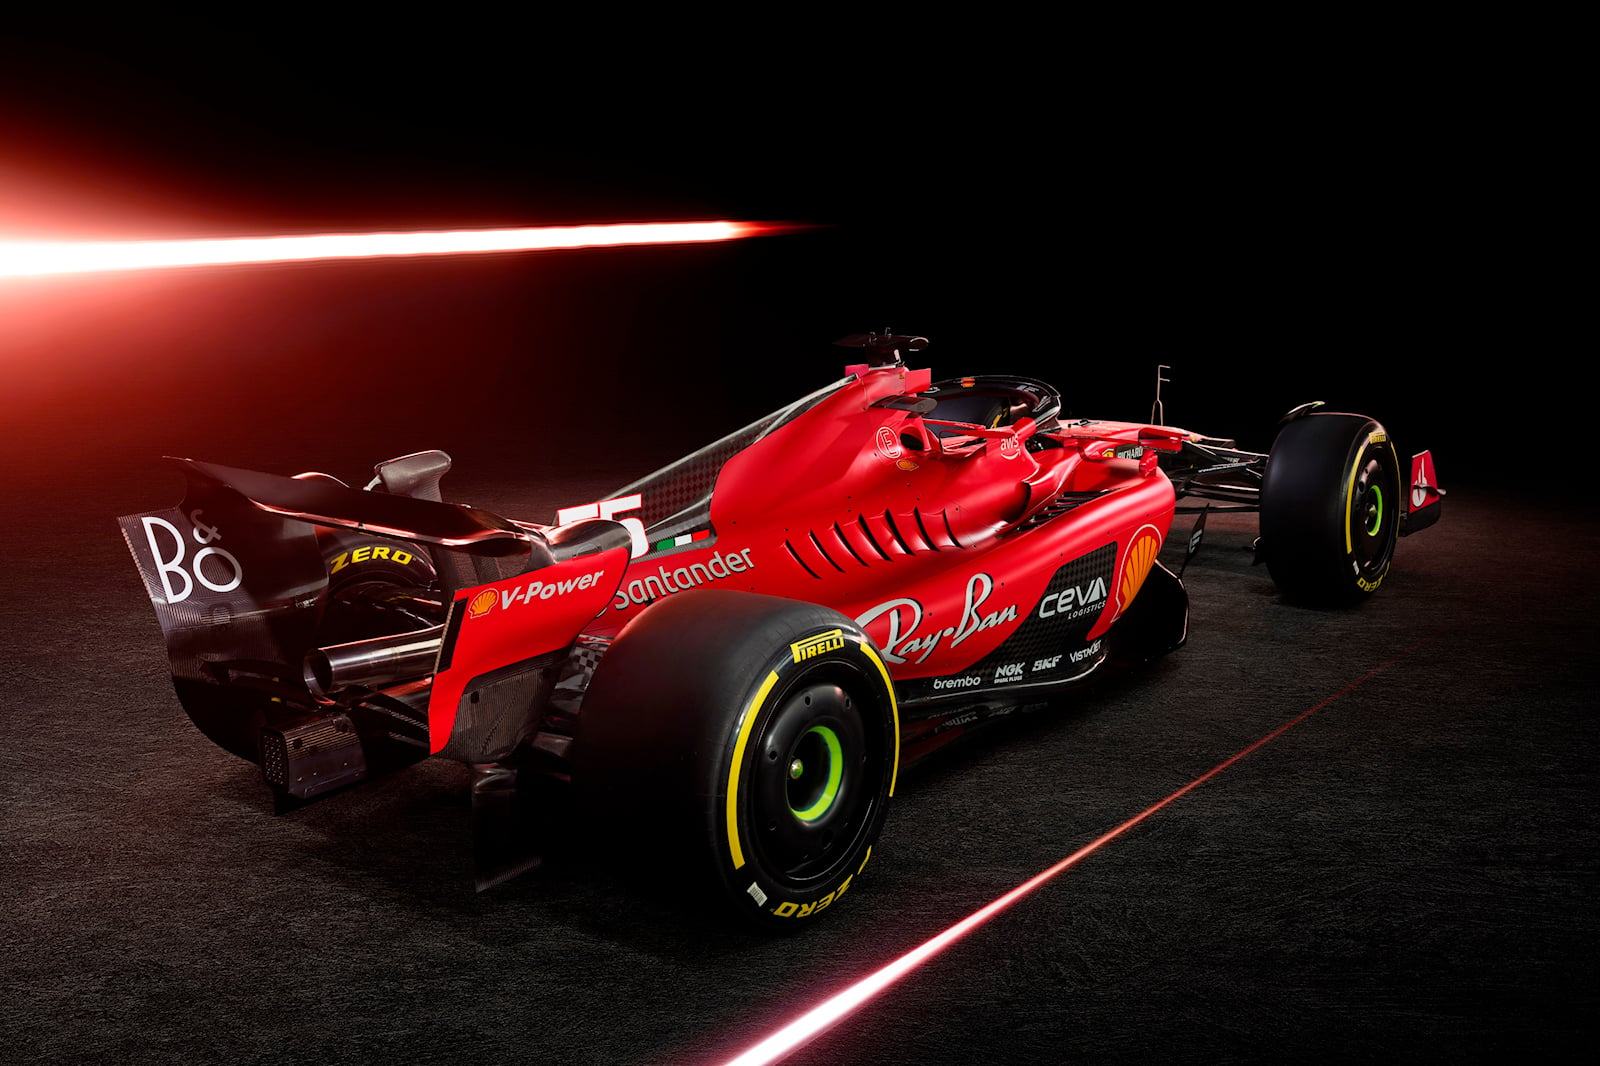 Ferrari 2018 F1 car unveiled